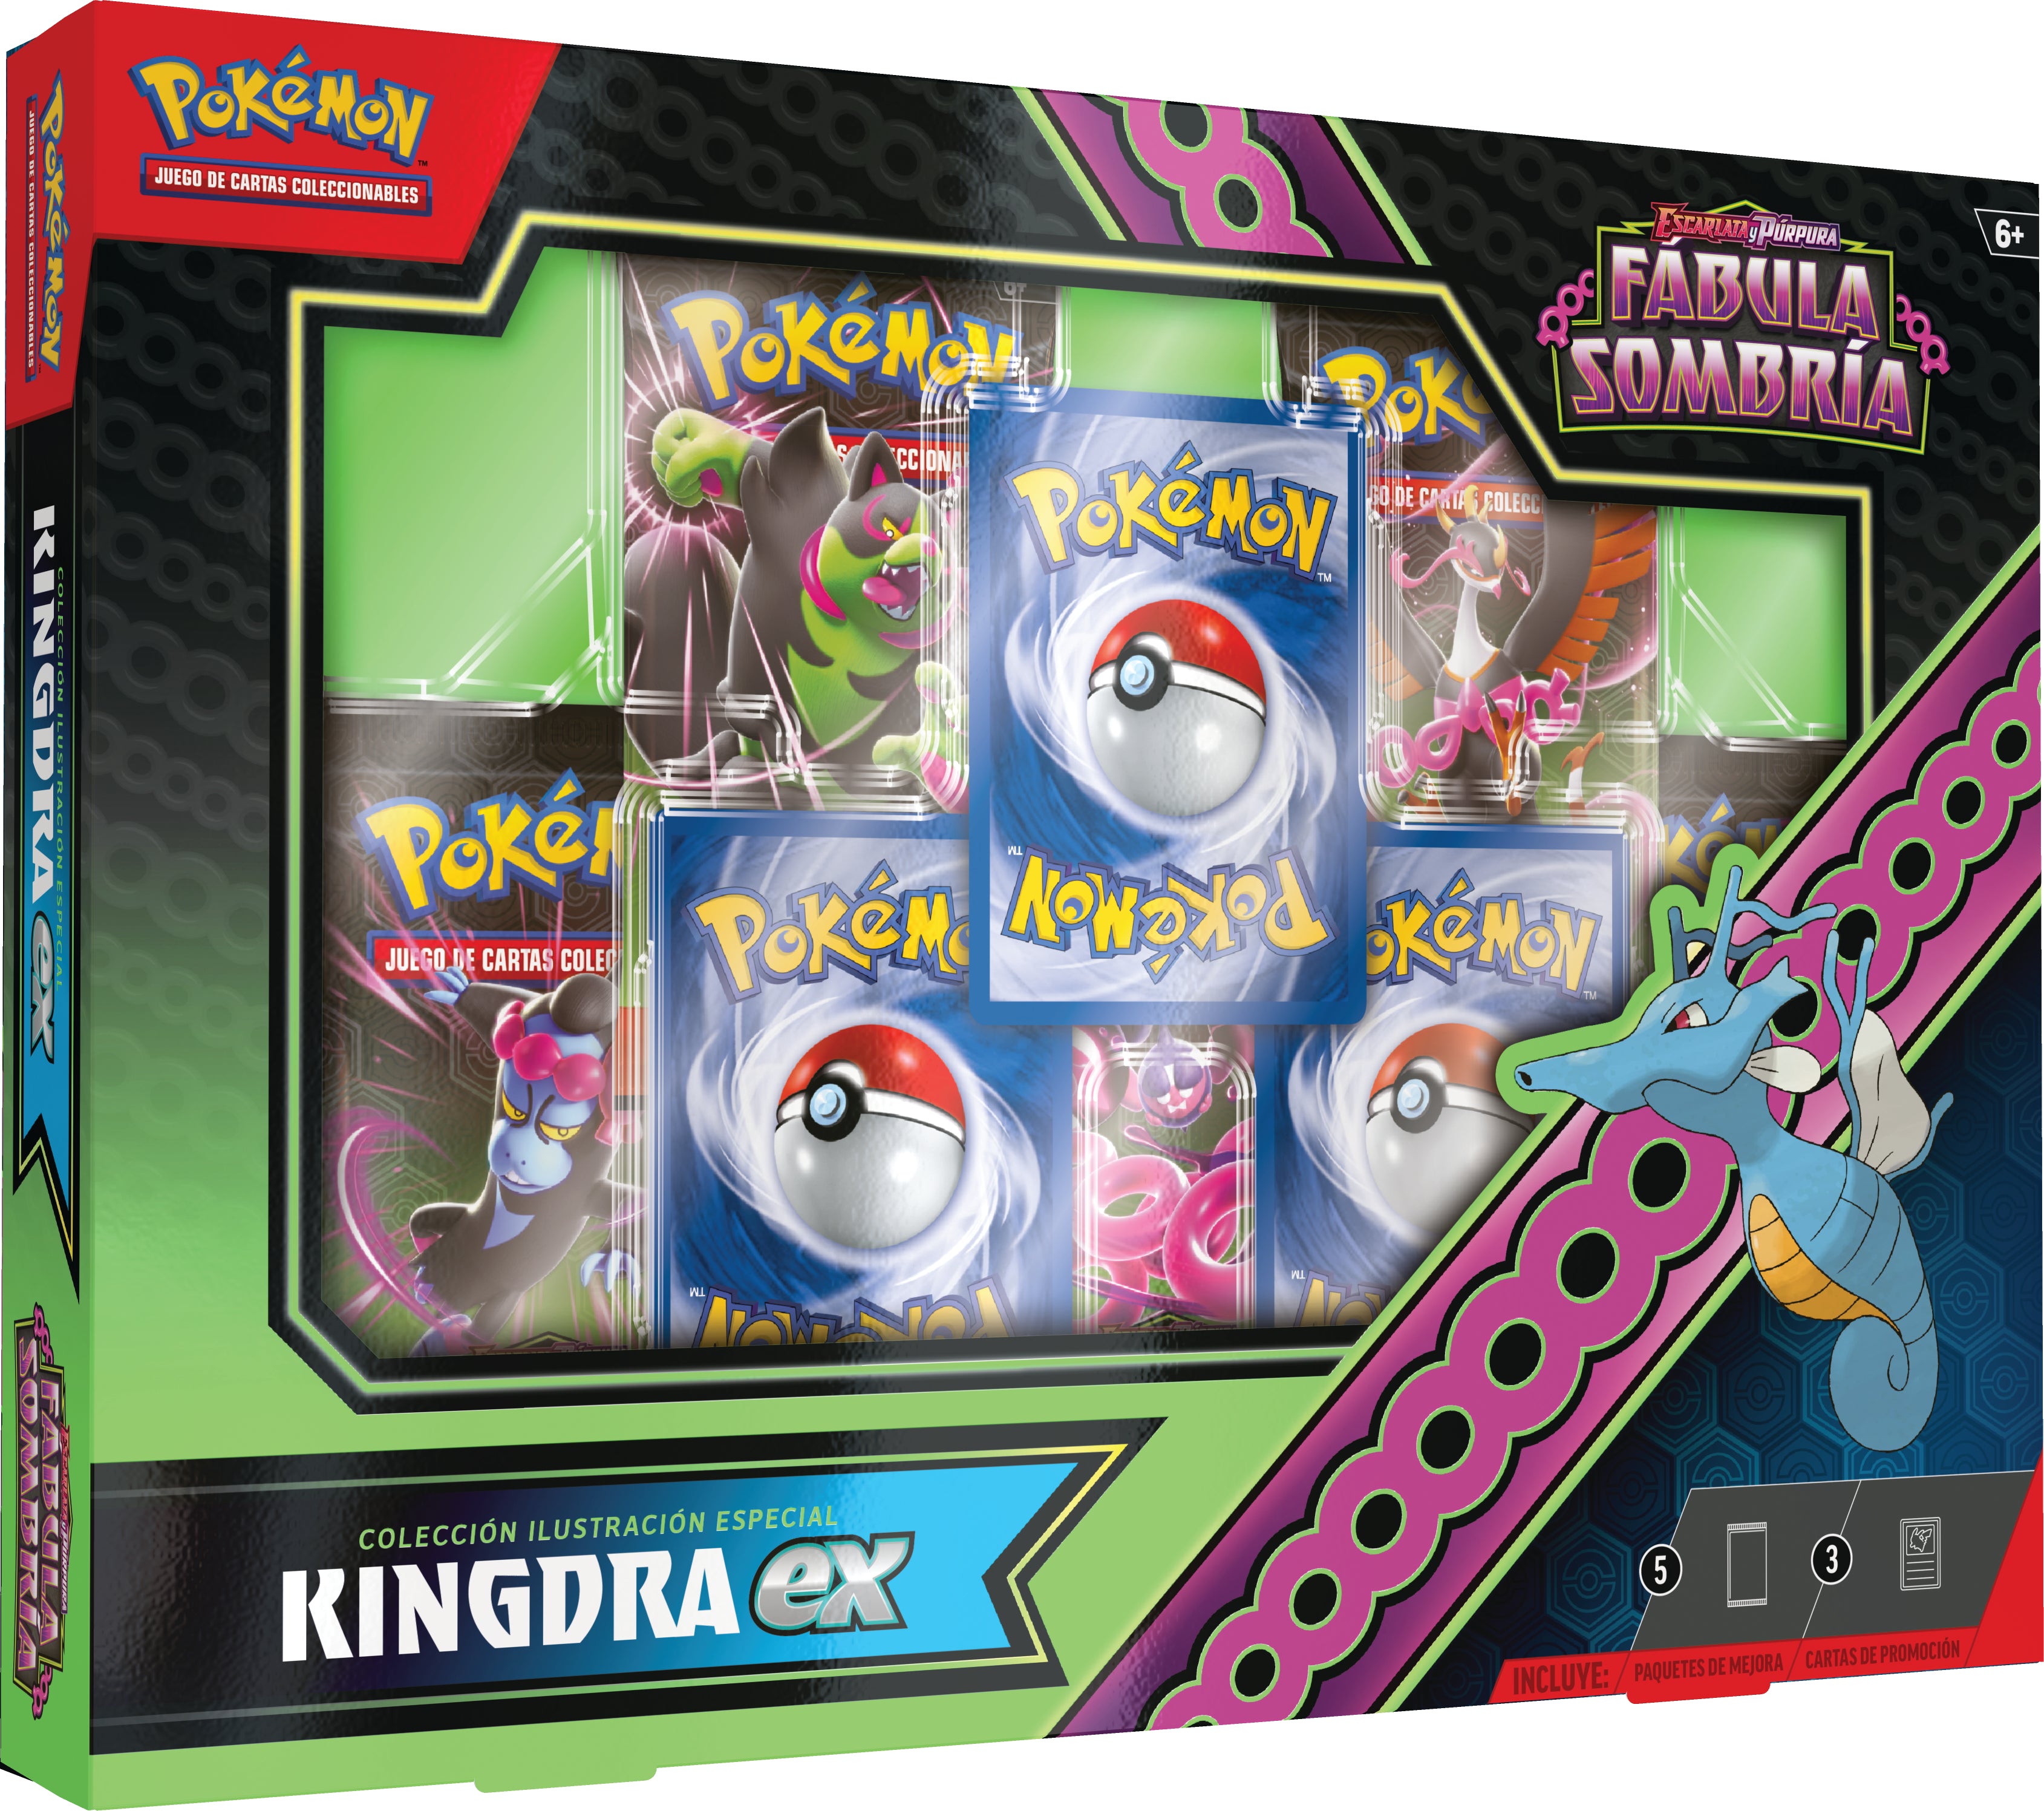 Pokemon TCG Escarlata y Purpura: Fabula Sombria - Kingdra Ex Special Collection En Español